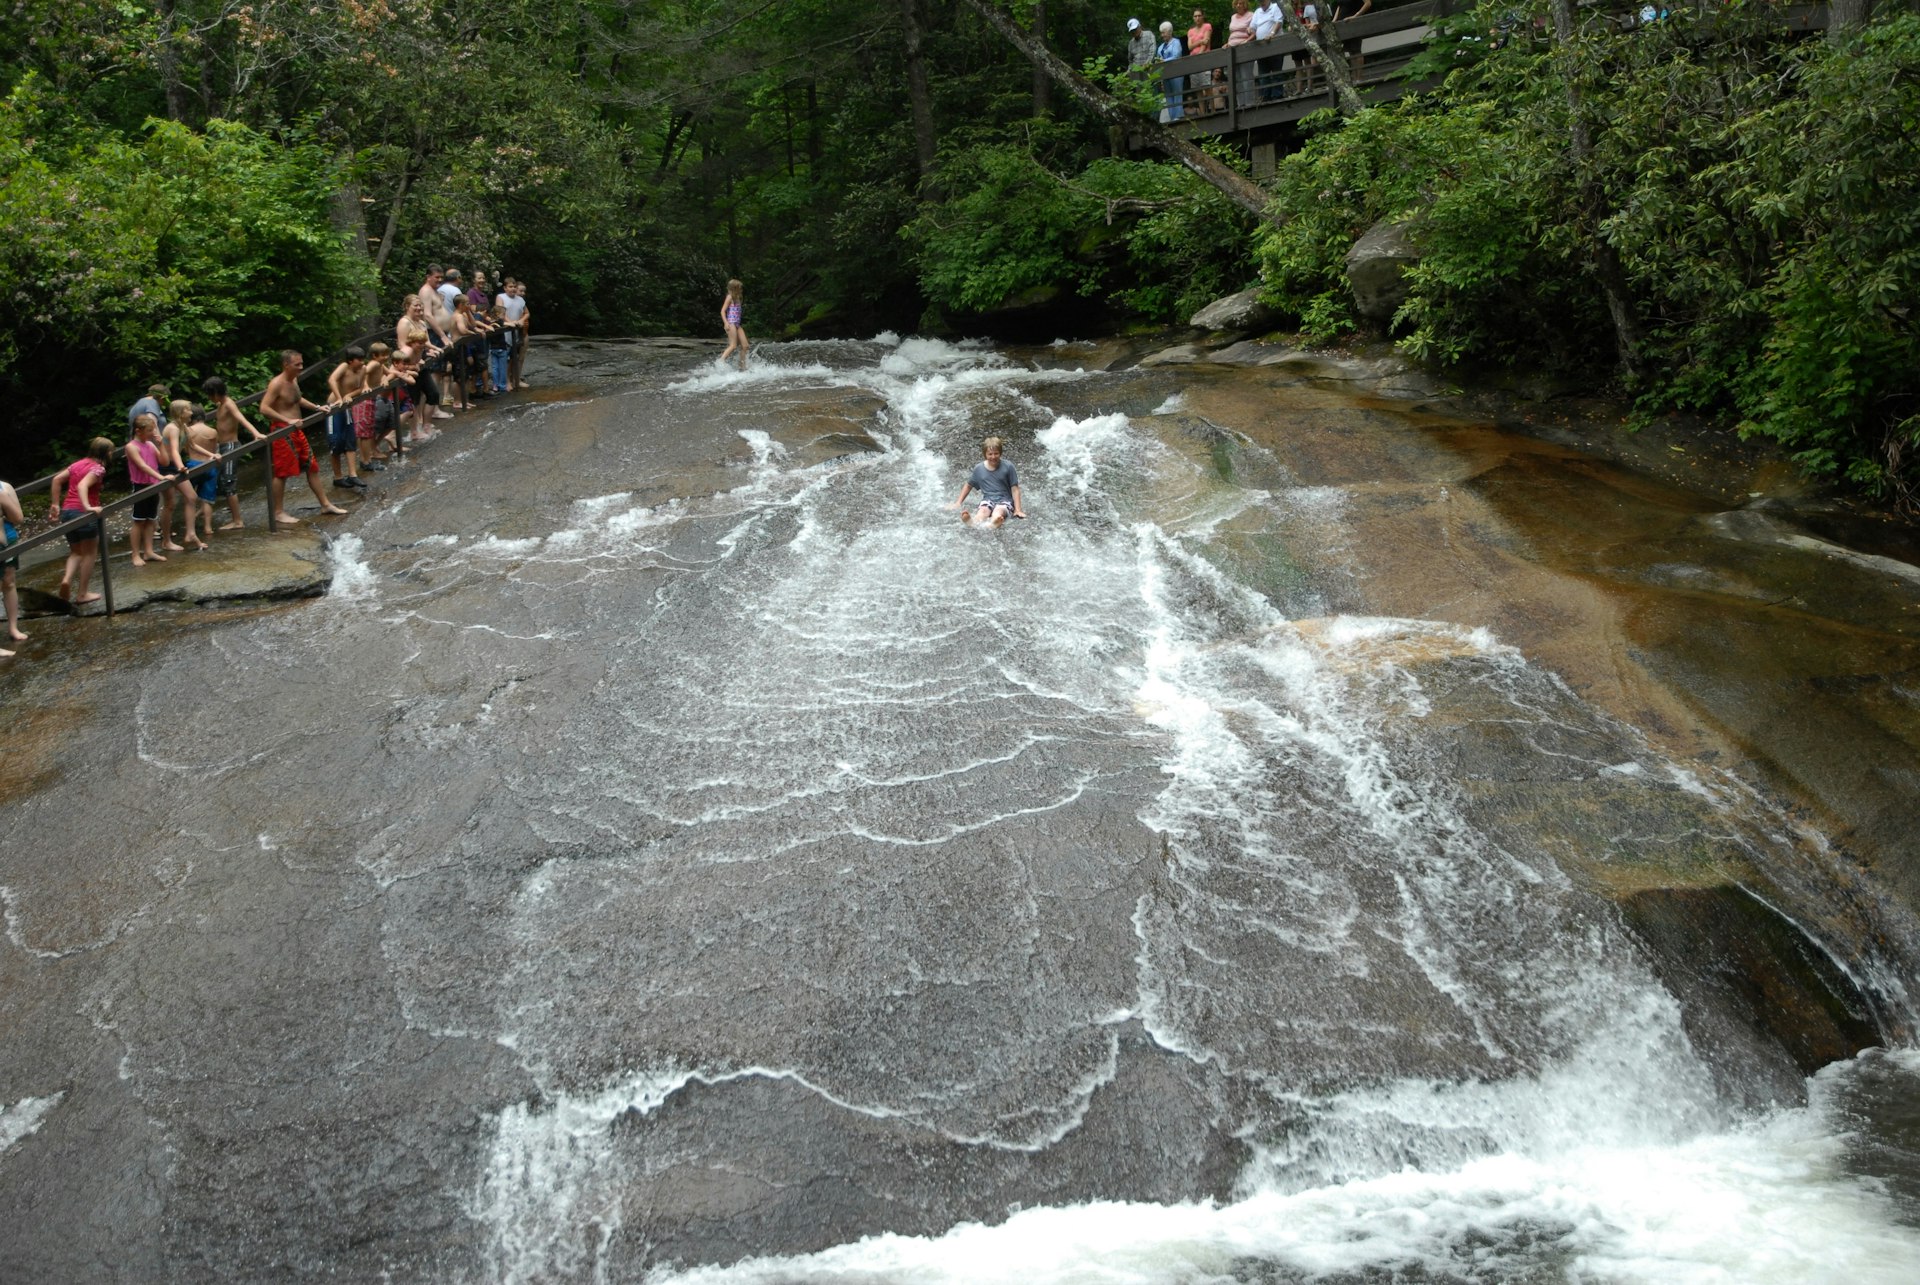 Kid sliding down the natural rock waterfall at Flat Rock, North Carolina